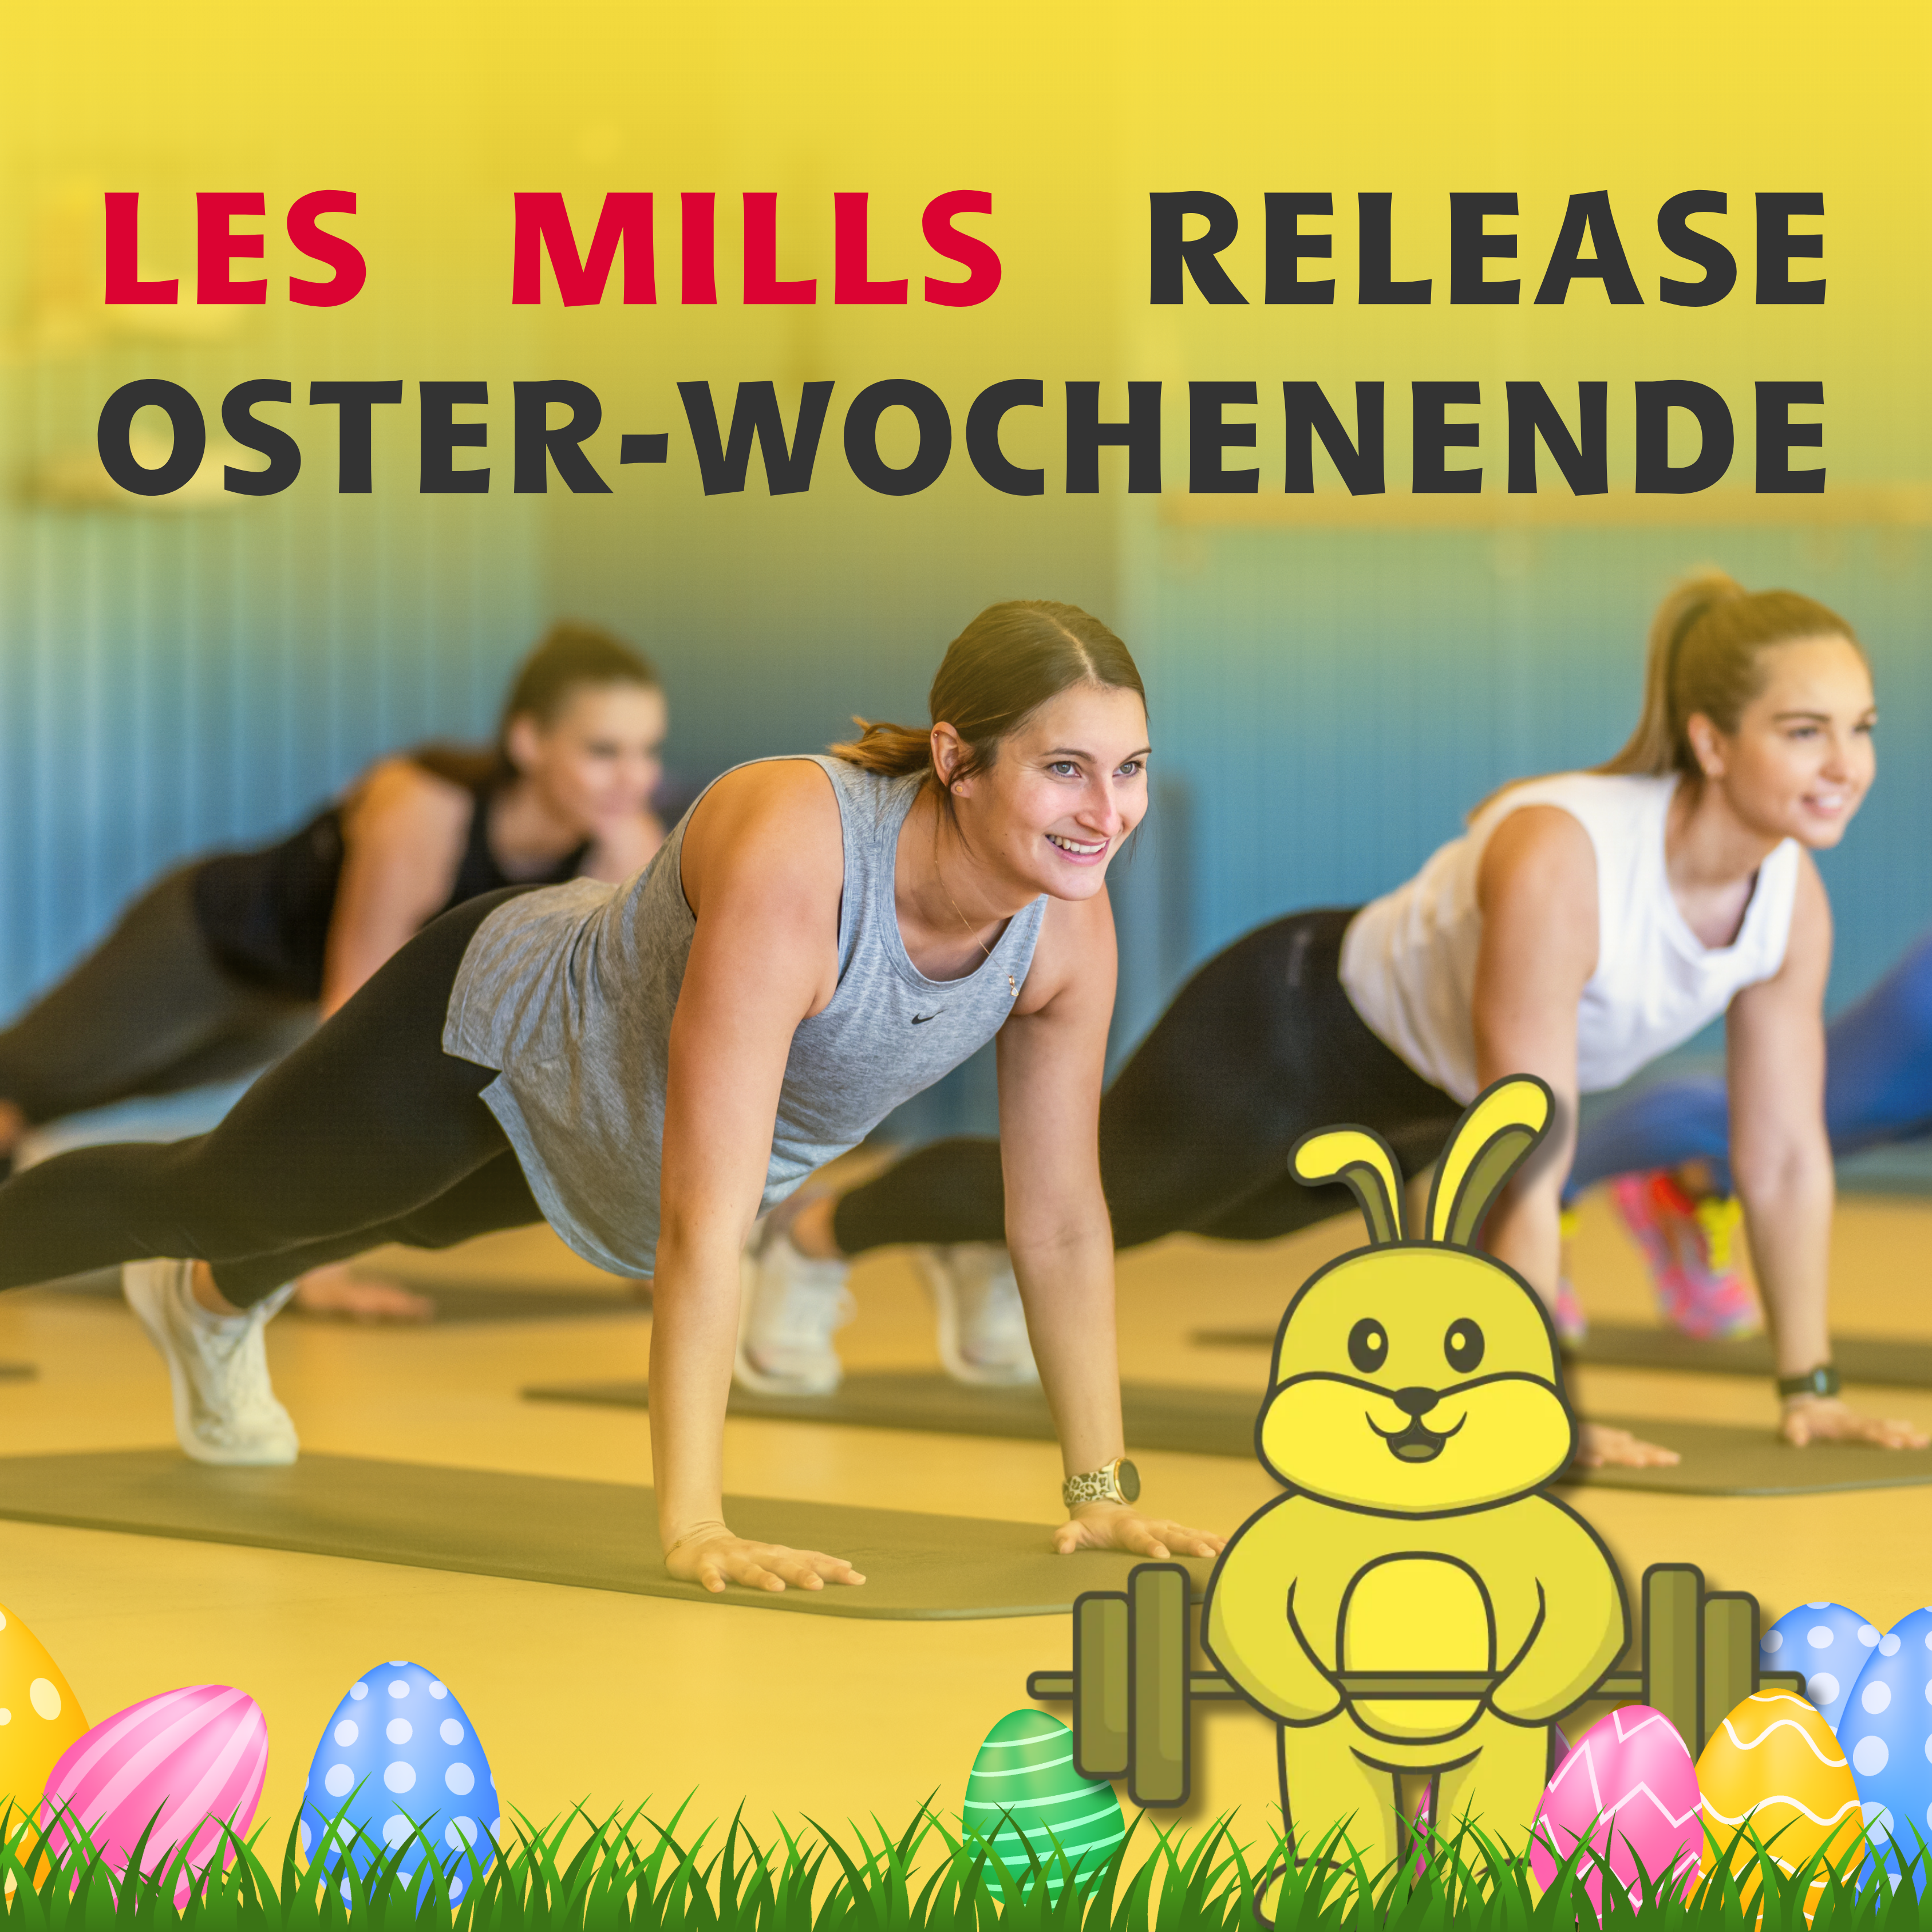 Les Mills Release Wochenende zu Ostern